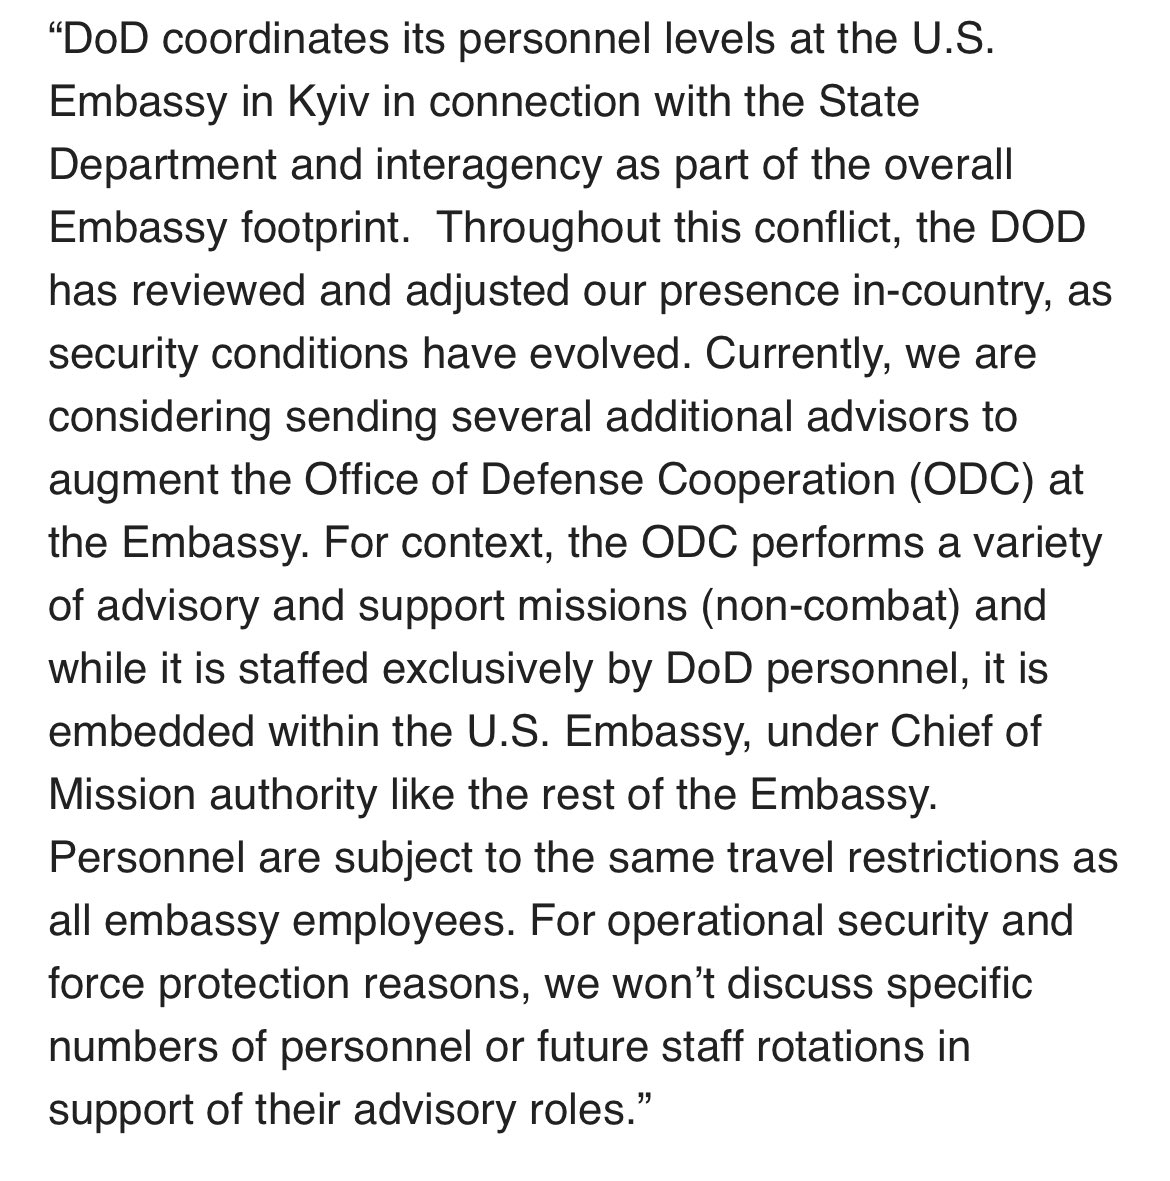 САЩ може да изпратят повече войски в Украйна, за да бъдат съветници, базирани в посолството, а не да участват в бойни действия. От @PentagonPresSec до Гласа на Америка – „В момента обмисляме да изпратим няколко допълнителни съветници, които да подпомогнат Службата на Def. Coop. в посолството. За съвети и поддръжка